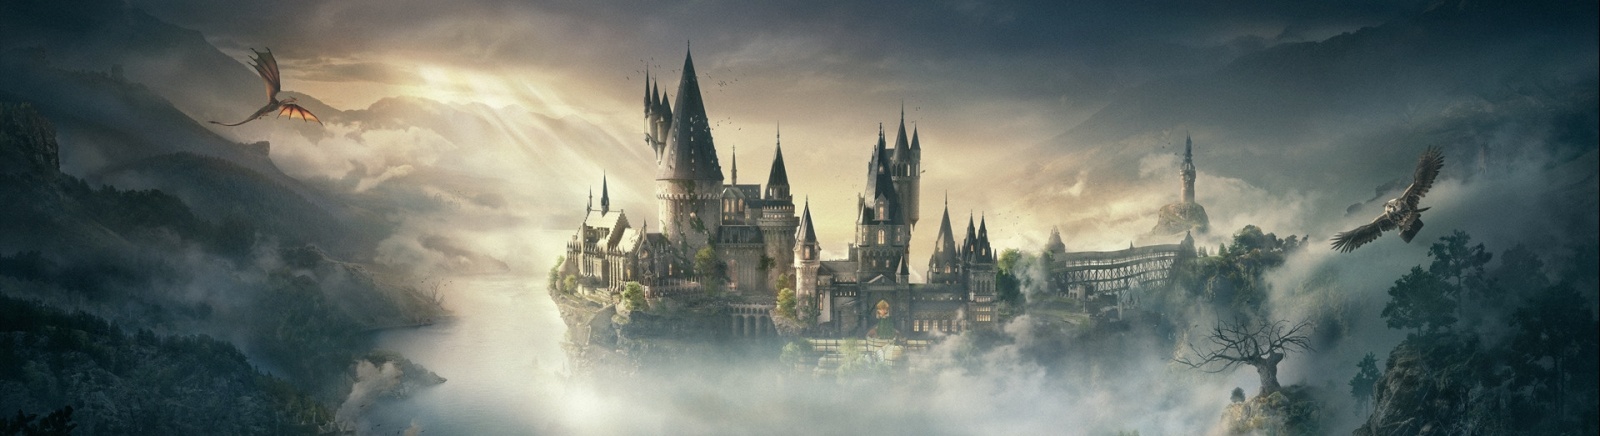 Дата выхода Hogwarts Legacy (Magic Forever)  на PC, PS5 и Xbox Series X/S в России и во всем мире